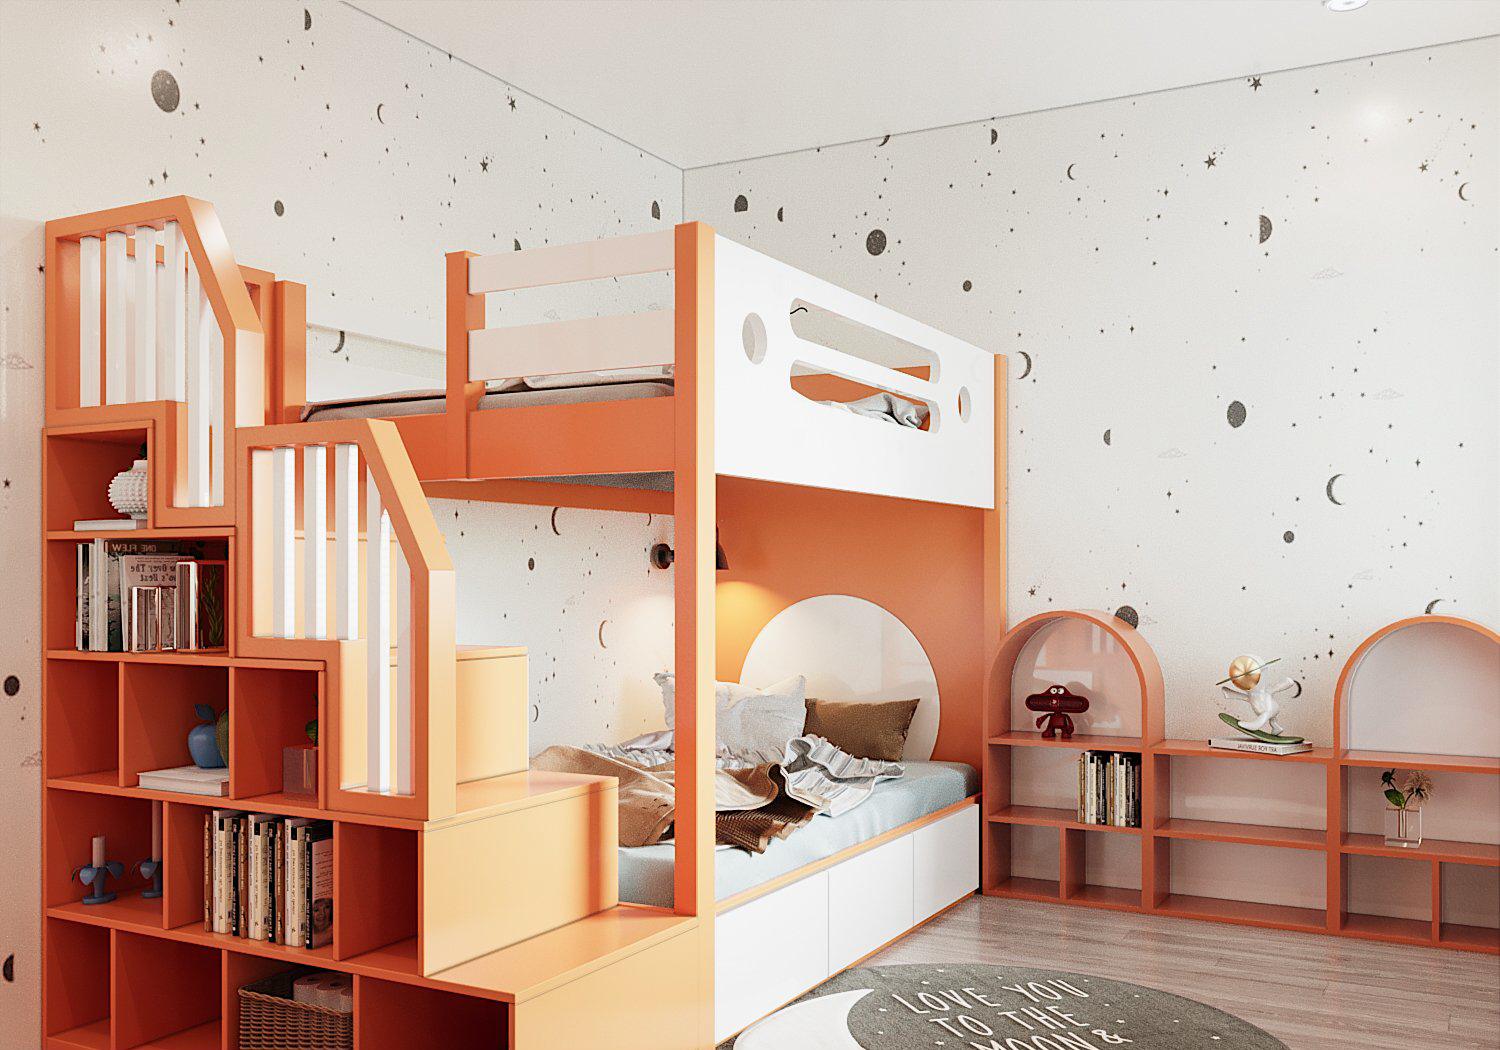 hình ảnh phòng ngủ trẻ em với thiết kế giường tầng màu cam, góc vui chơi với những điêm nhấn hình vòm, giấy dán tường họa tiết trăng sao, vũ trụ